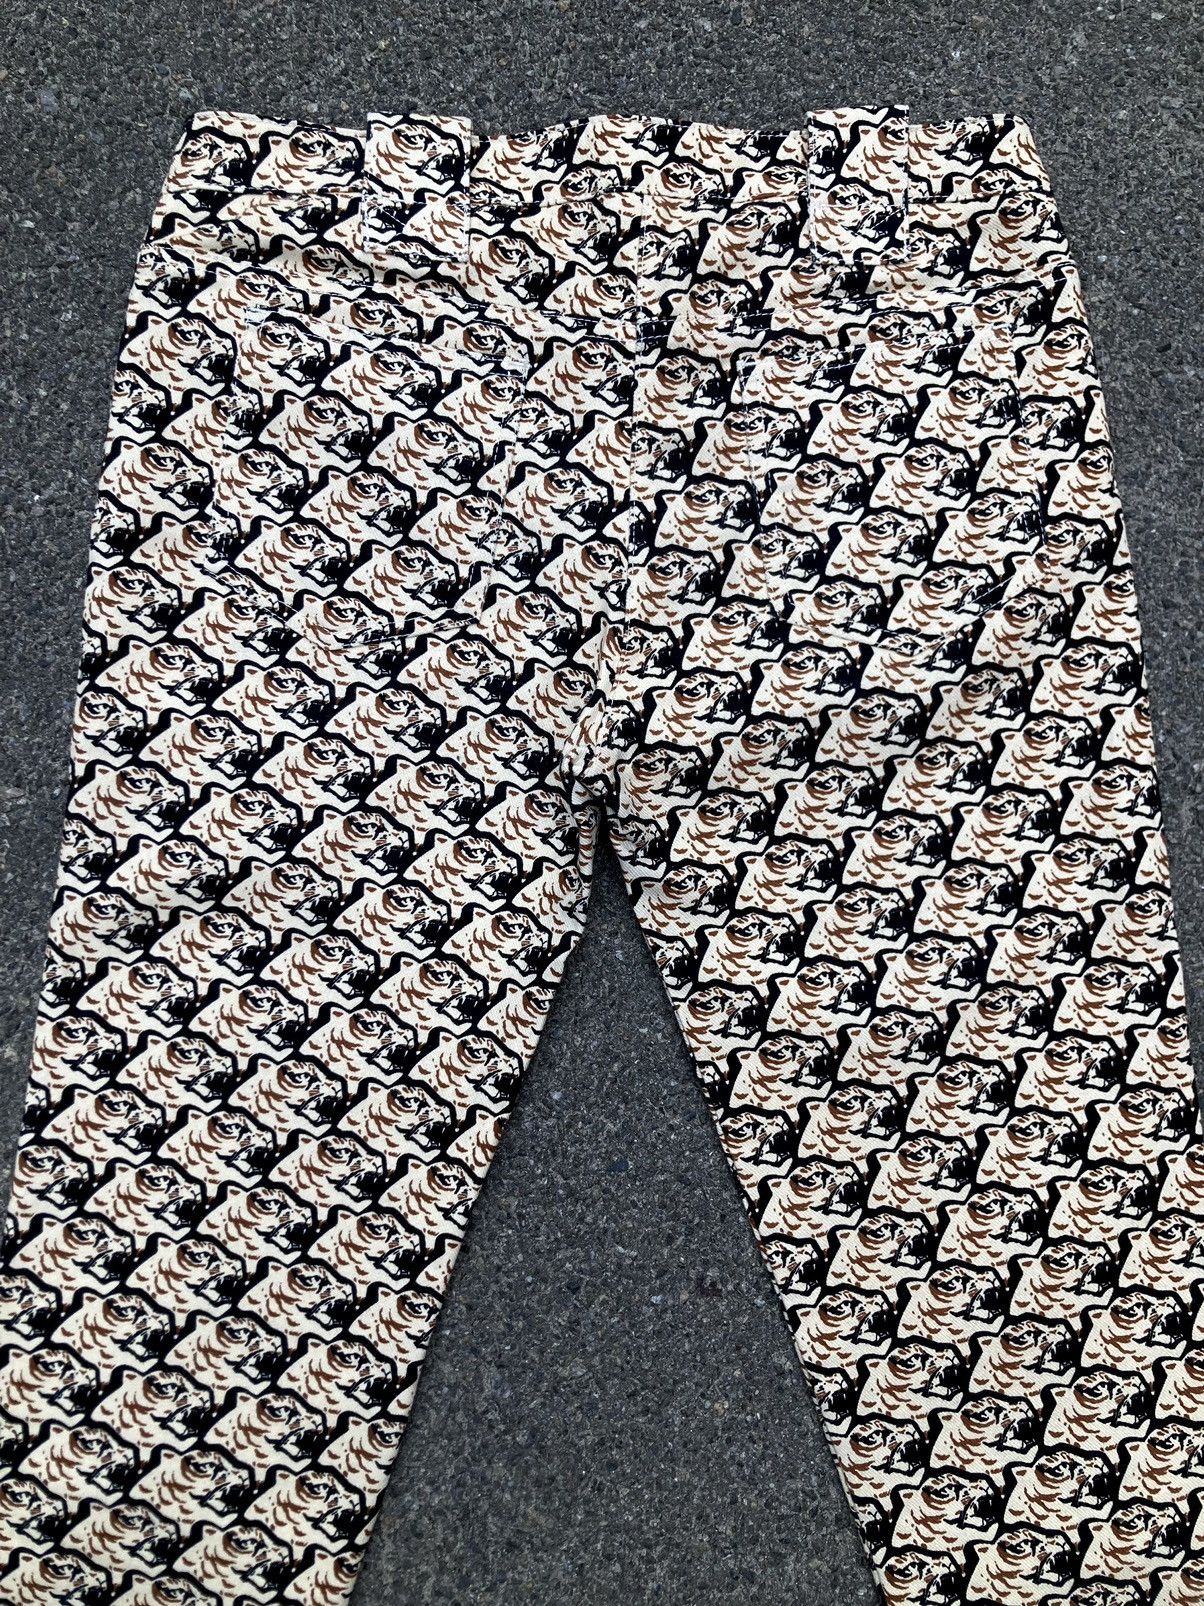 Kenzo Kenzo Paris Tiger Pattern Women Slim Fit Jeans Size 38 Size 26" / US 2 / IT 38 - 6 Thumbnail